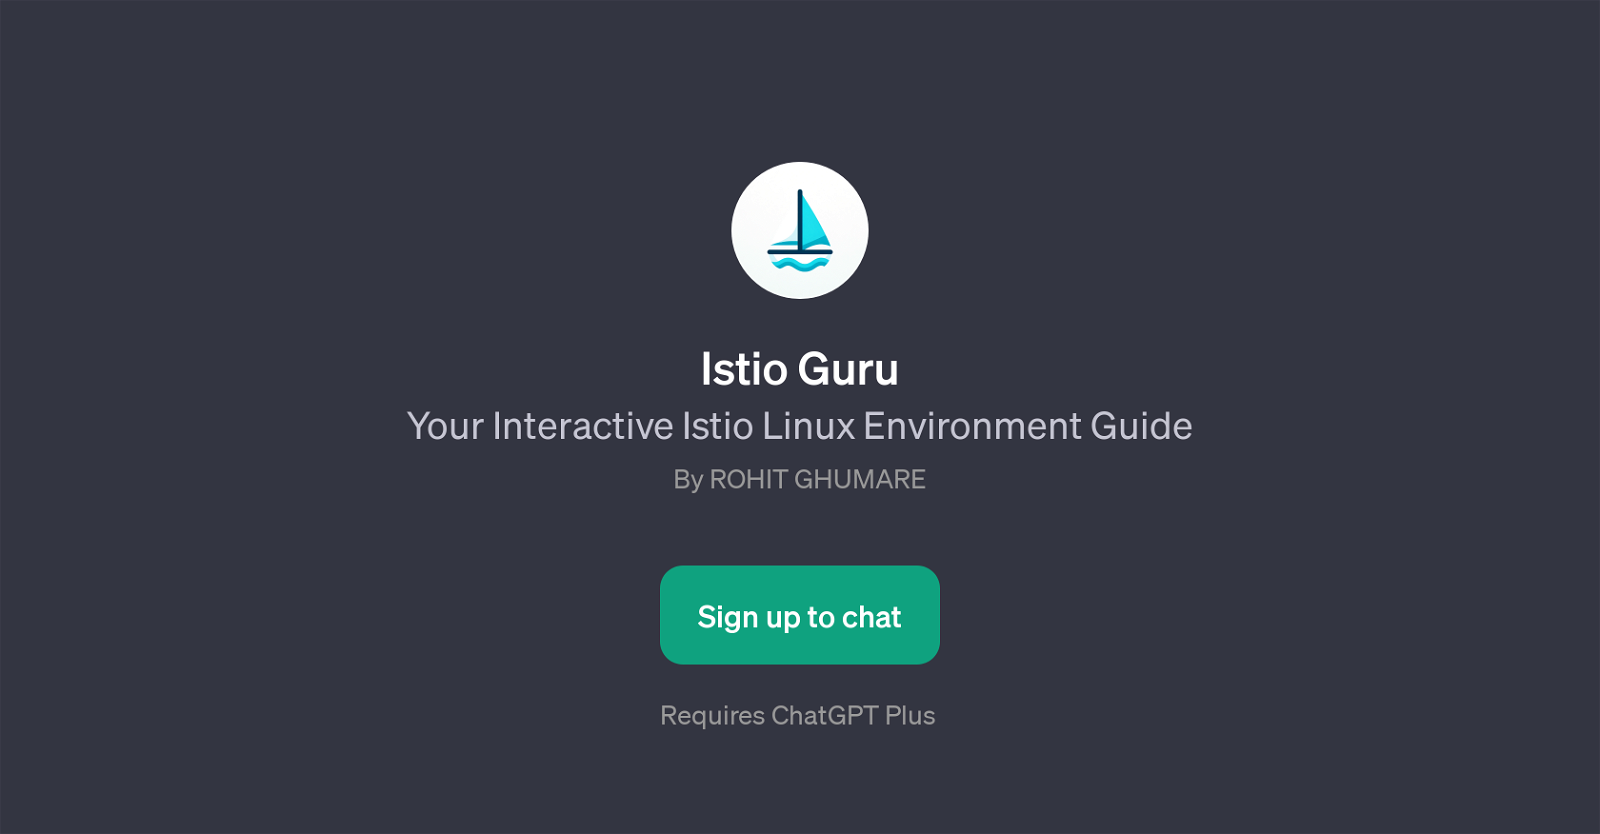 Istio Guru website